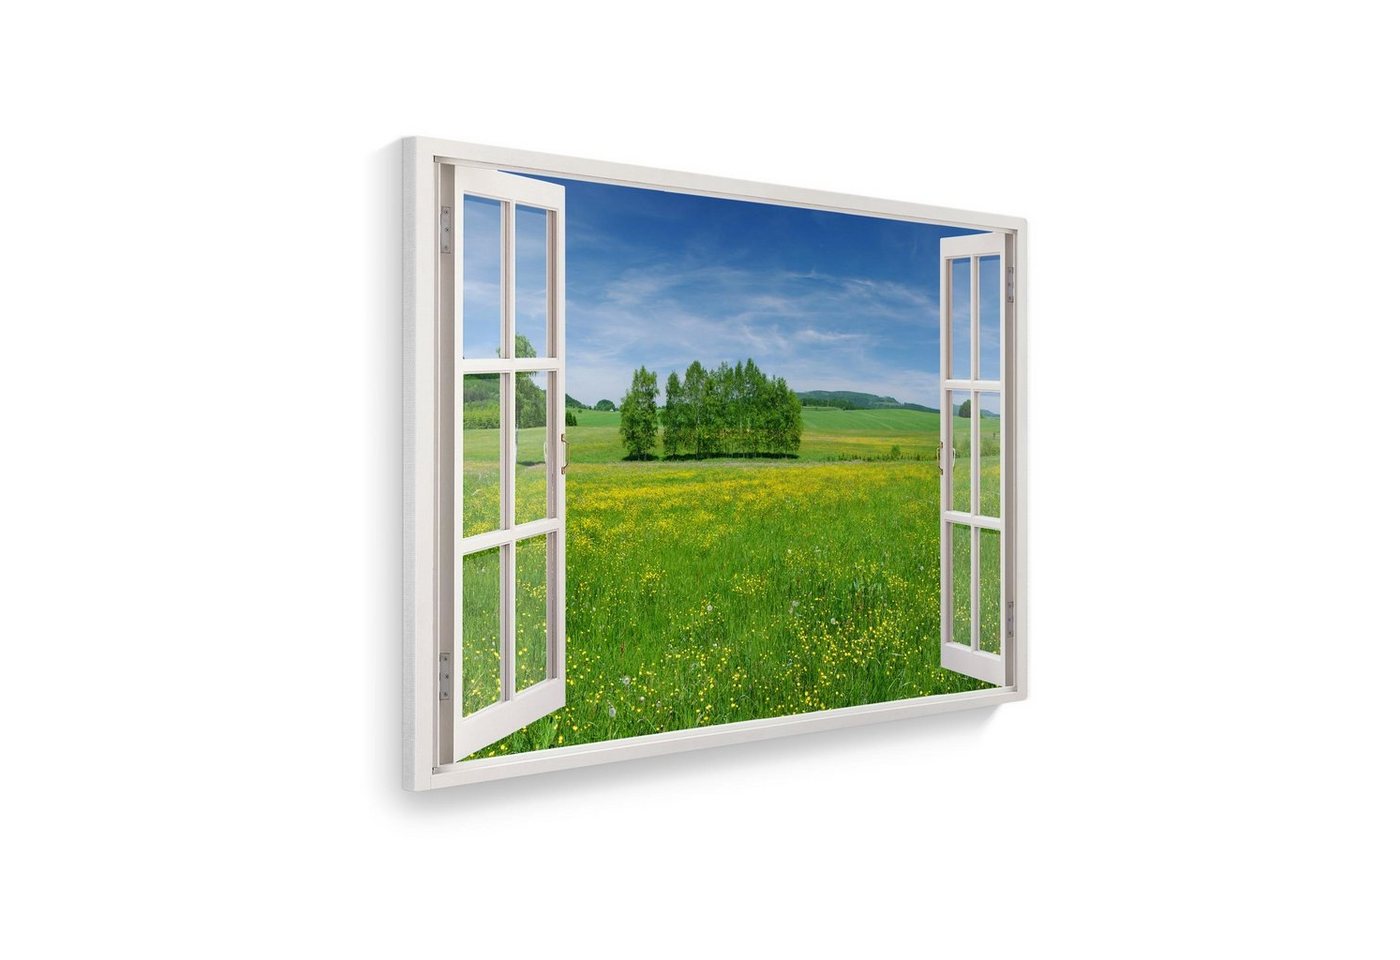 WallSpirit Leinwandbild Fenster mit Aussicht", Wiese, Leinwandbild geeignet für alle Wohnbereiche" von WallSpirit